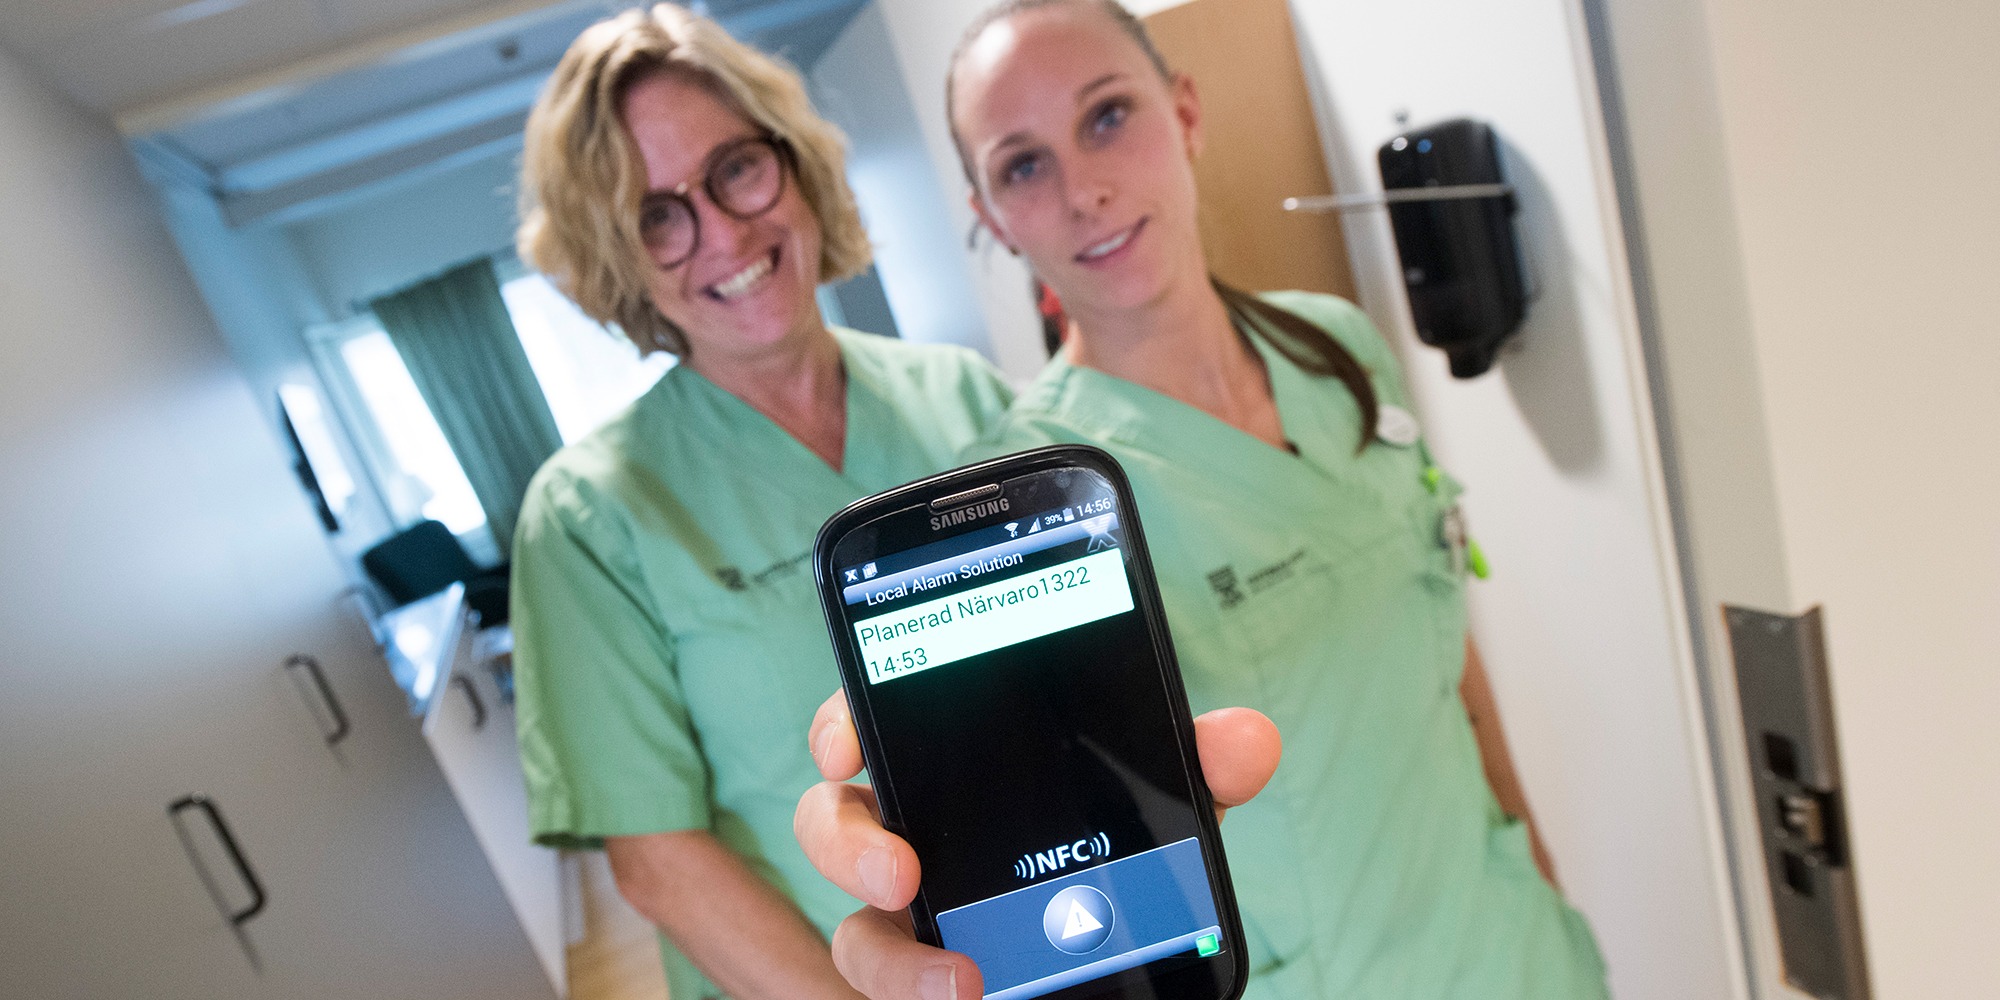 två kvinnor i gröna sjukvårdskläder står tätt intill varandra i en korridor, och håller fram en mobil med texten "Planerad närvaro".